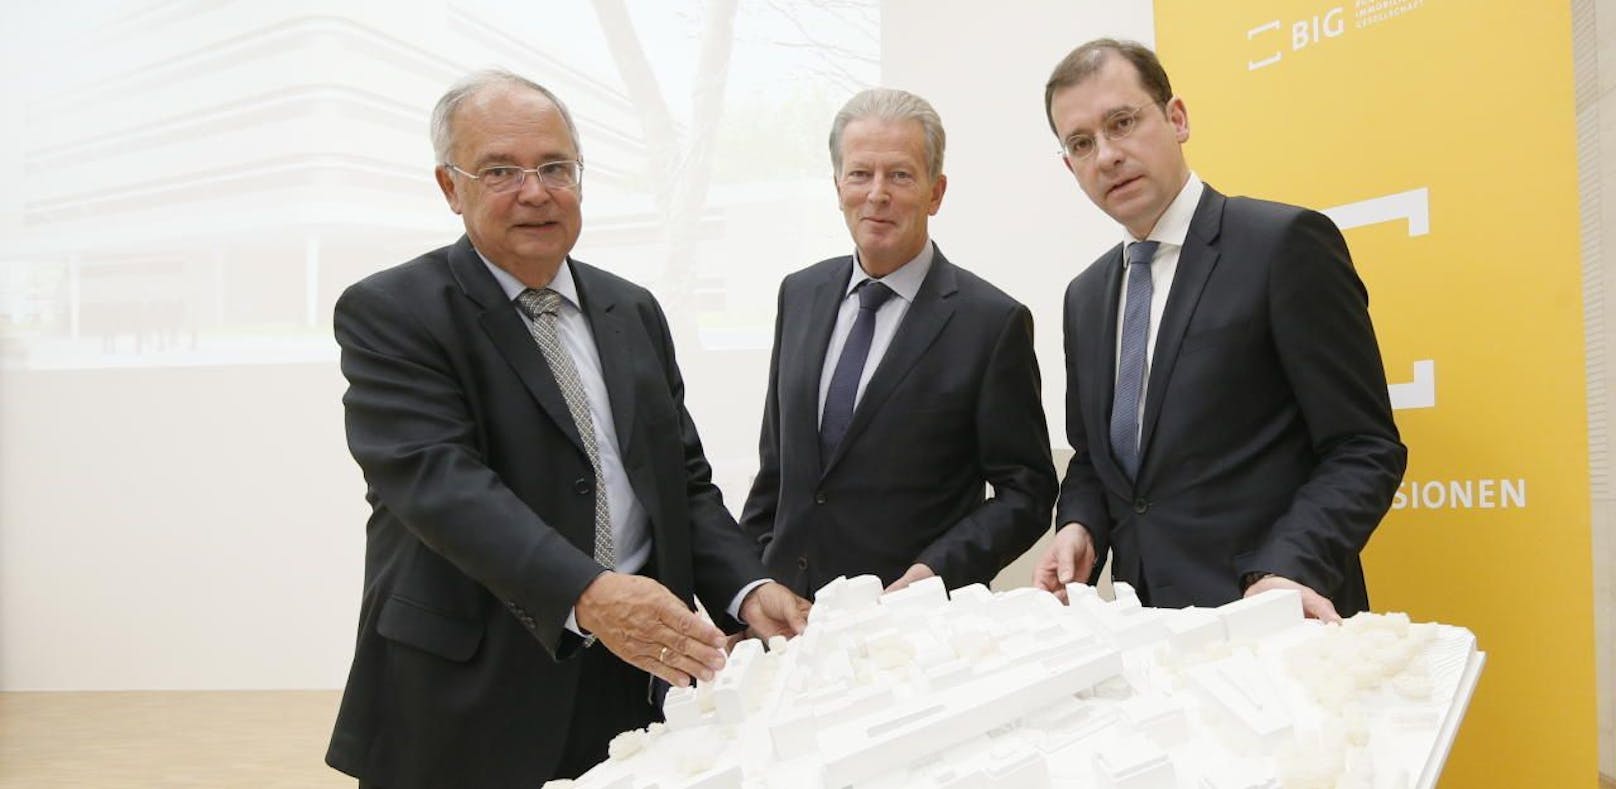 Um 146 Mio. €: Neues Bio-Zentrum für die Uni Wien